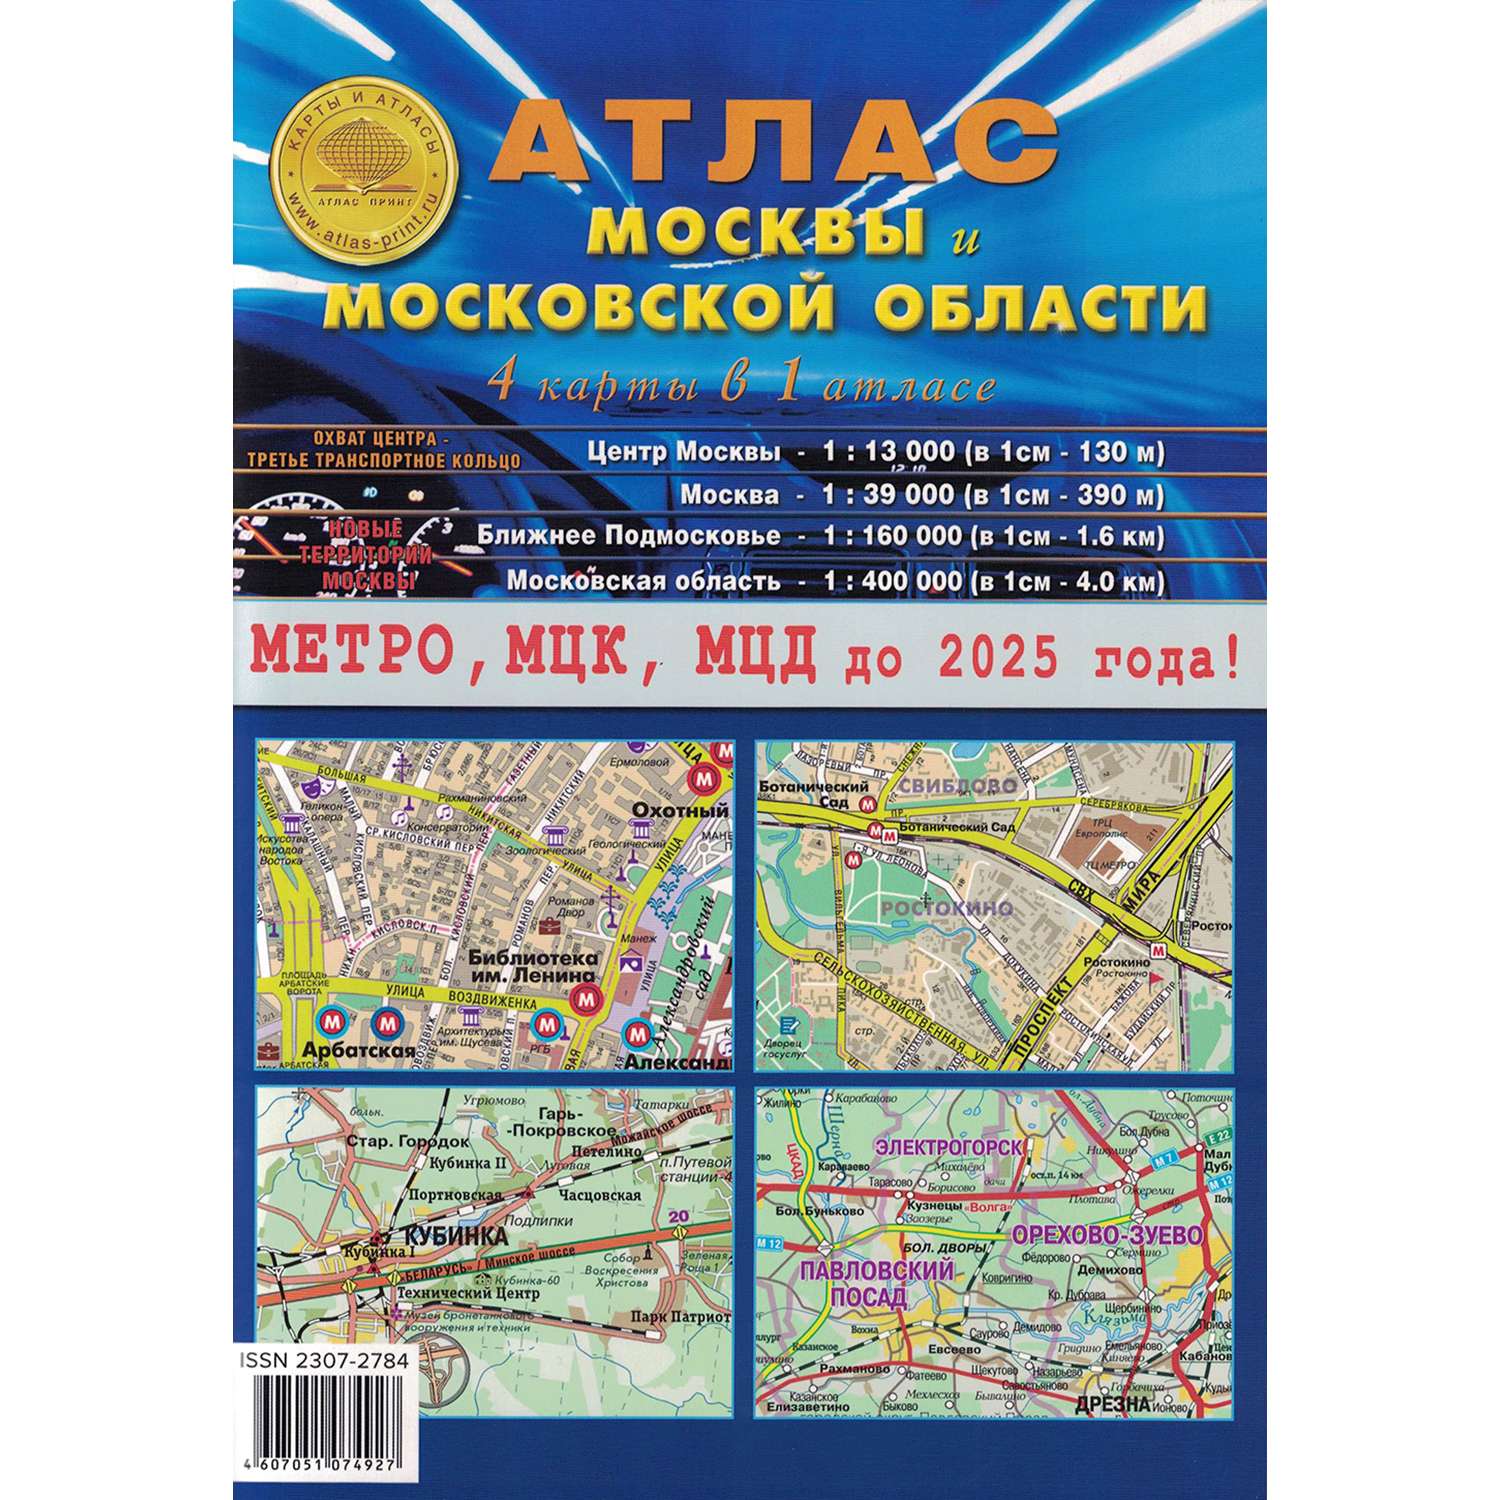 Книга Атлас Принт Атлас Москвы и Московской области 4 карты в 1 атласе - фото 1